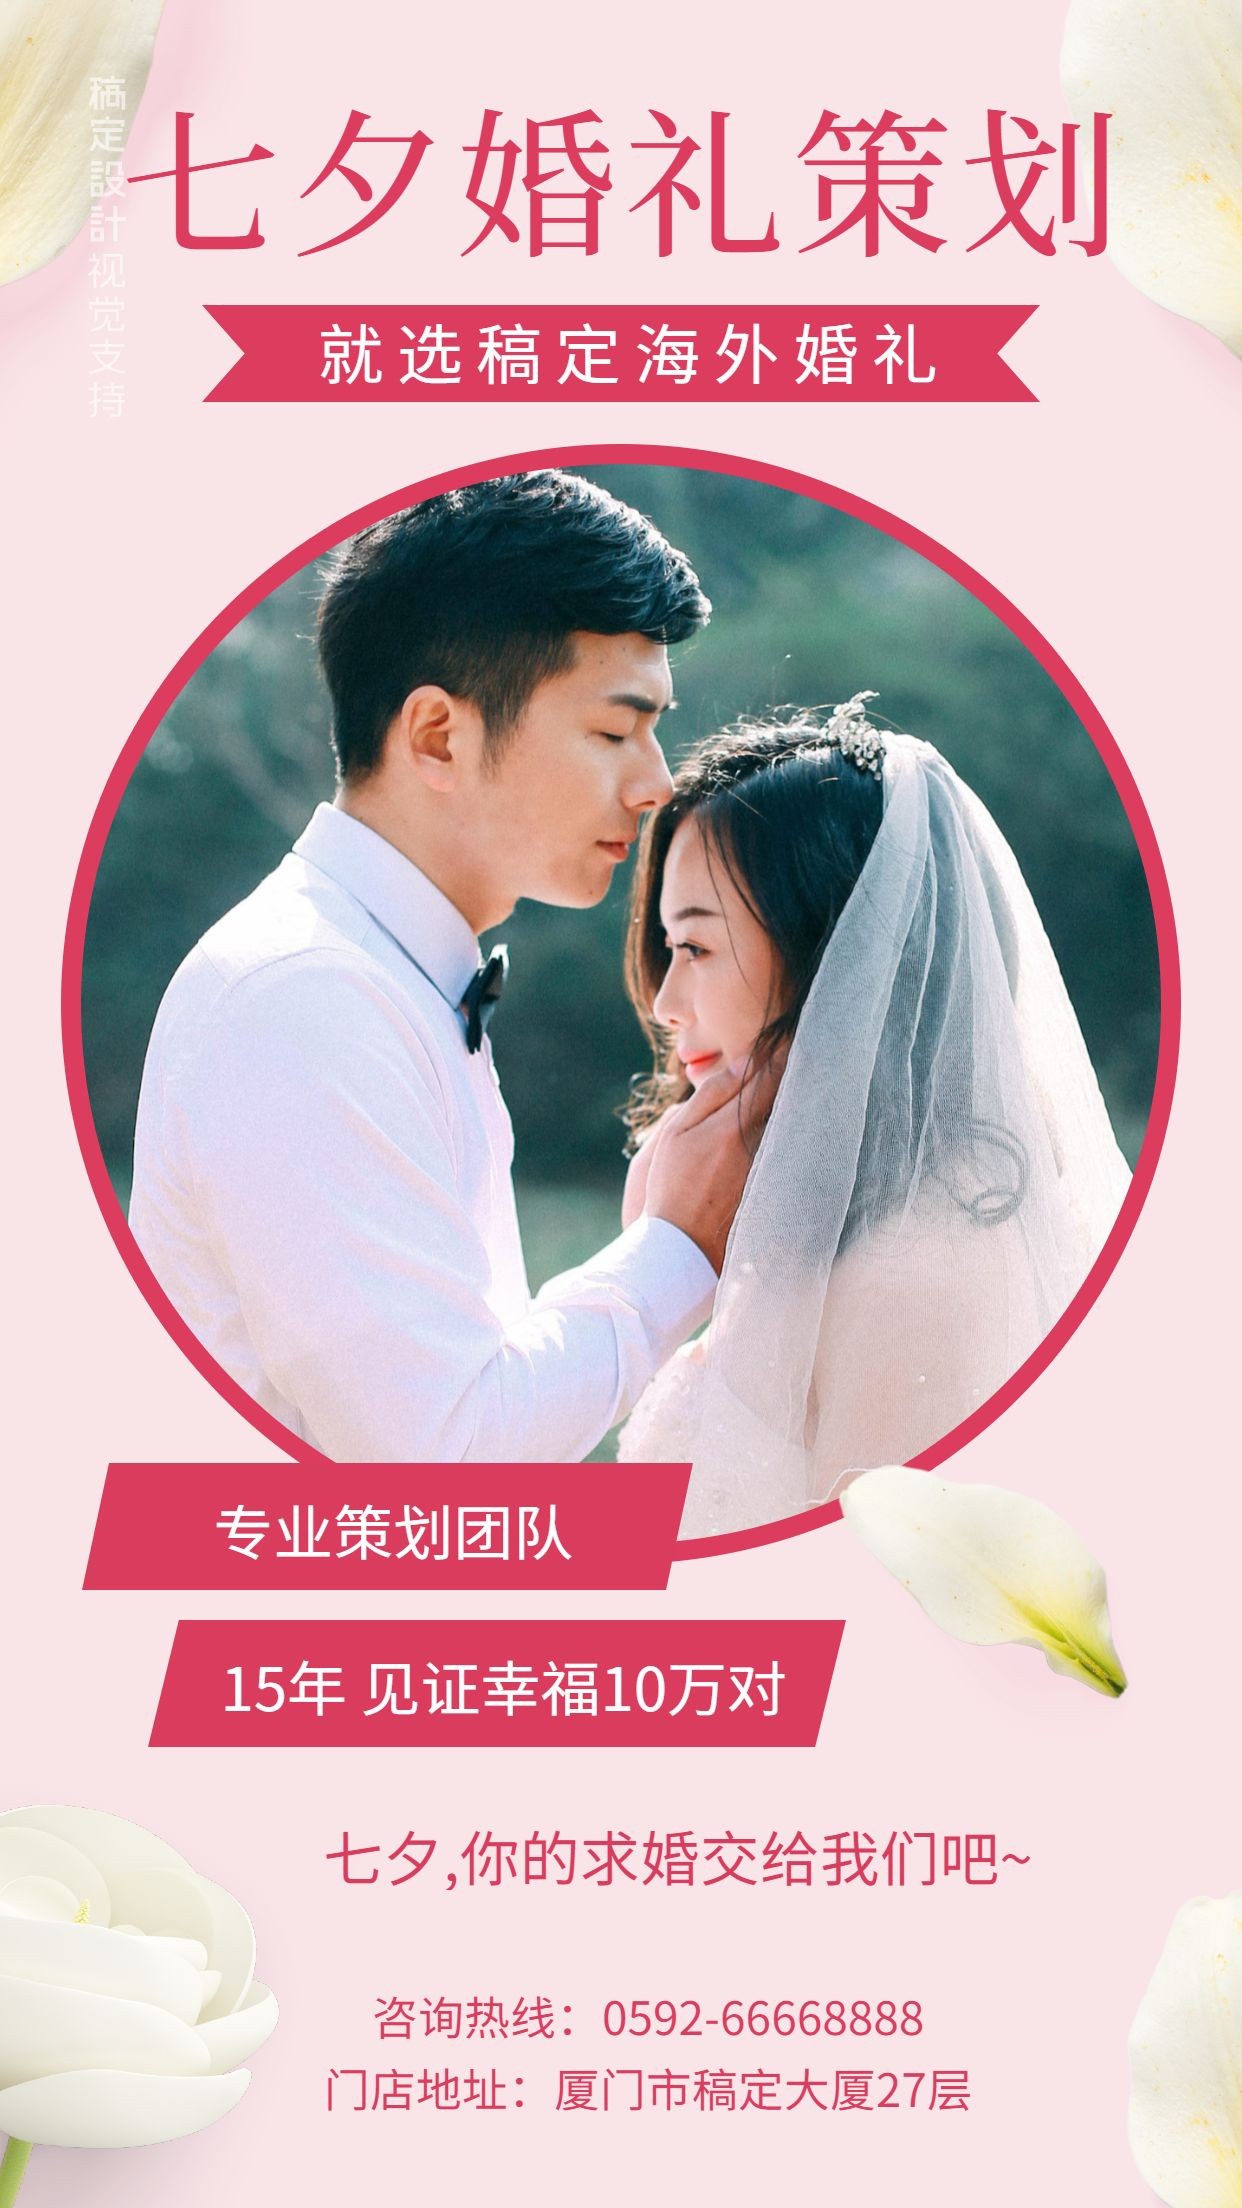 七夕婚礼策划团队展示浪漫婚礼海报预览效果